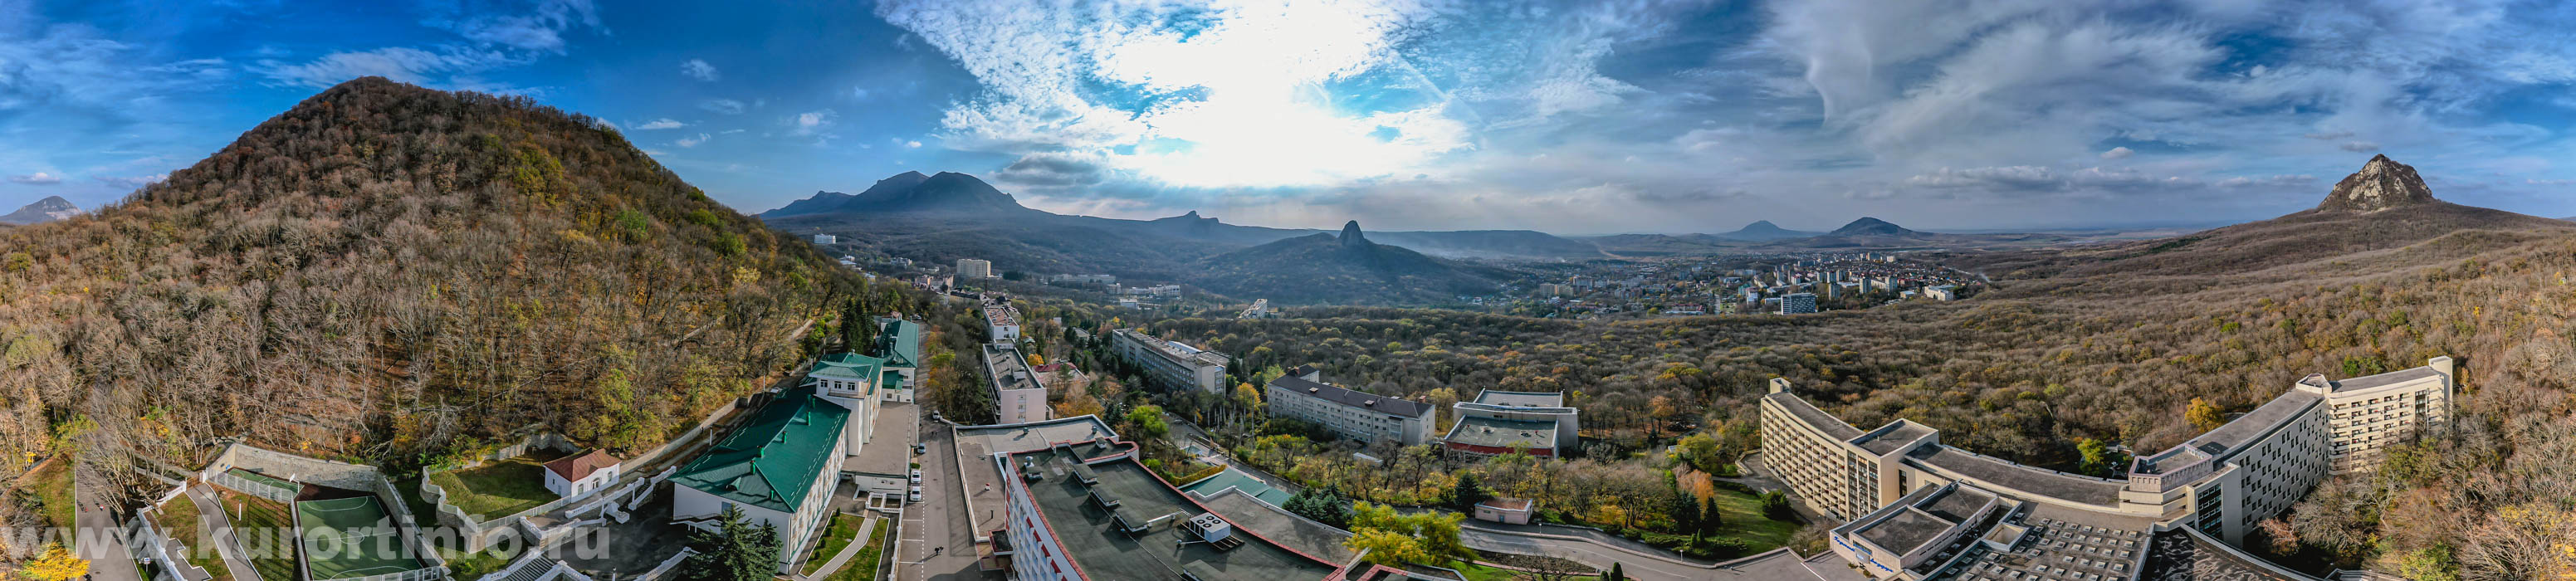 Фото панорама города Железноводска от санатория Горный воздух